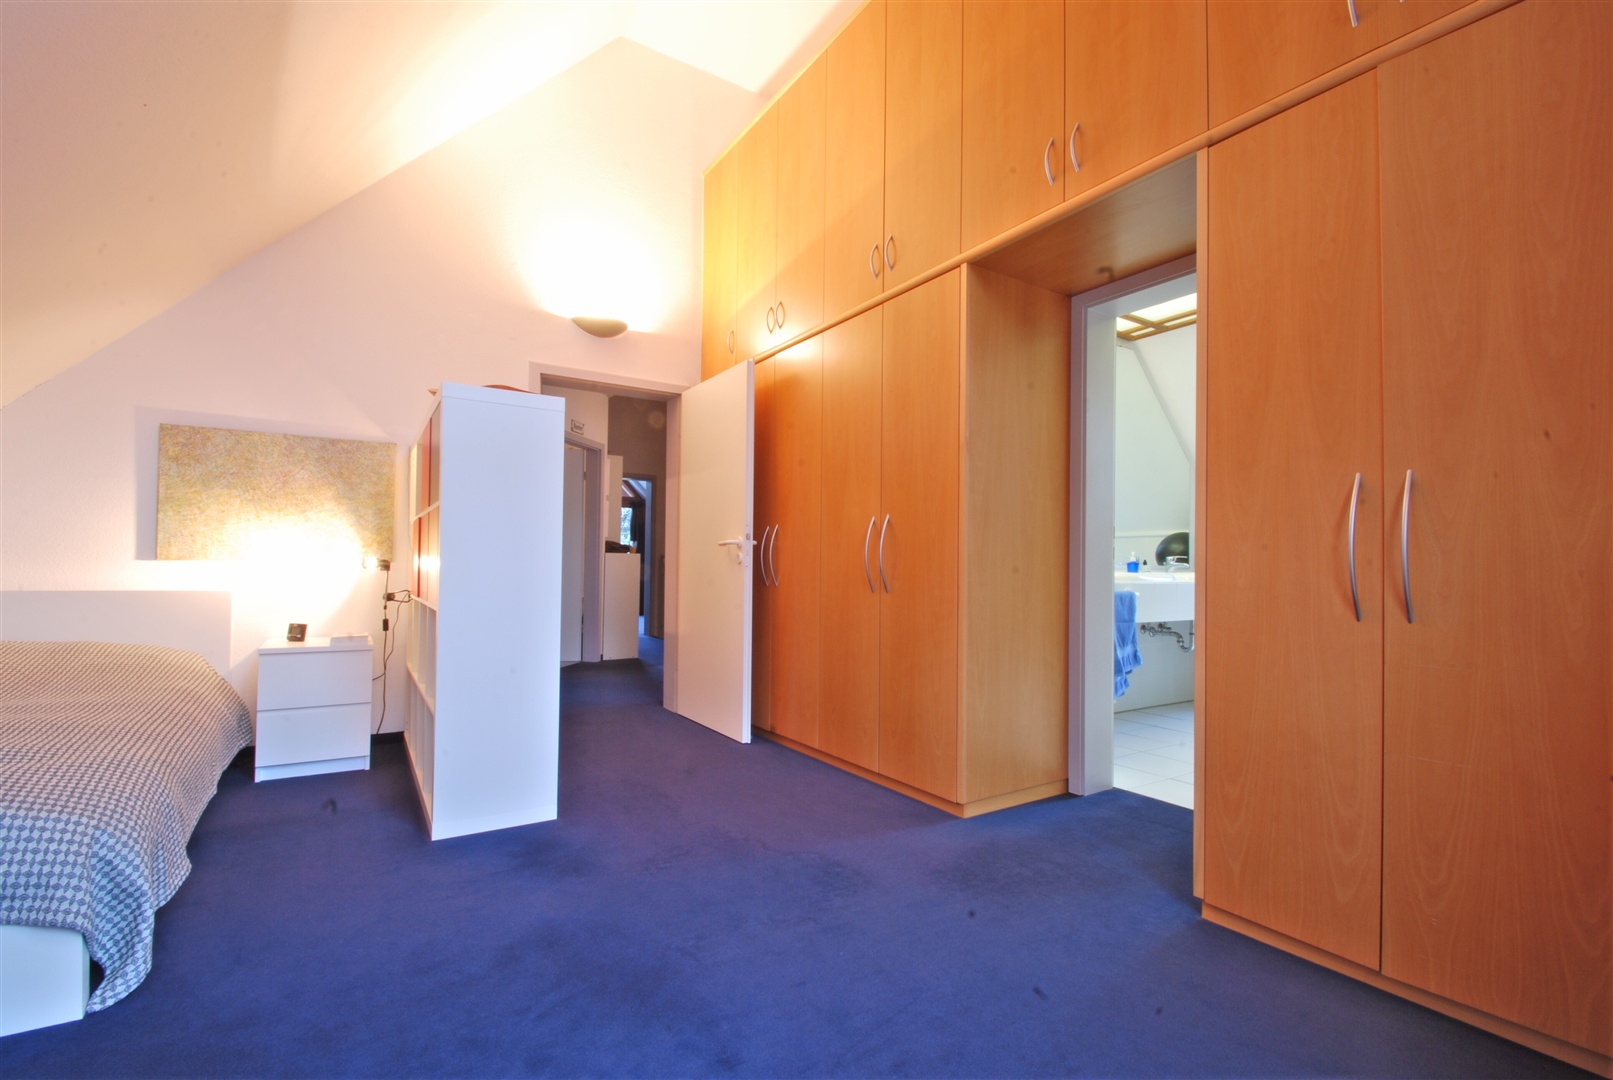 im hauptschlafzimmer ist ein ca. 3,5 meter hoher, riesiger einbauschrank enthalten der miterworben werden kann. in der mitte des raumes der zuang zum elternbadezimmer - Oliver Reifferscheid - Immobilienmakler Darmstadt